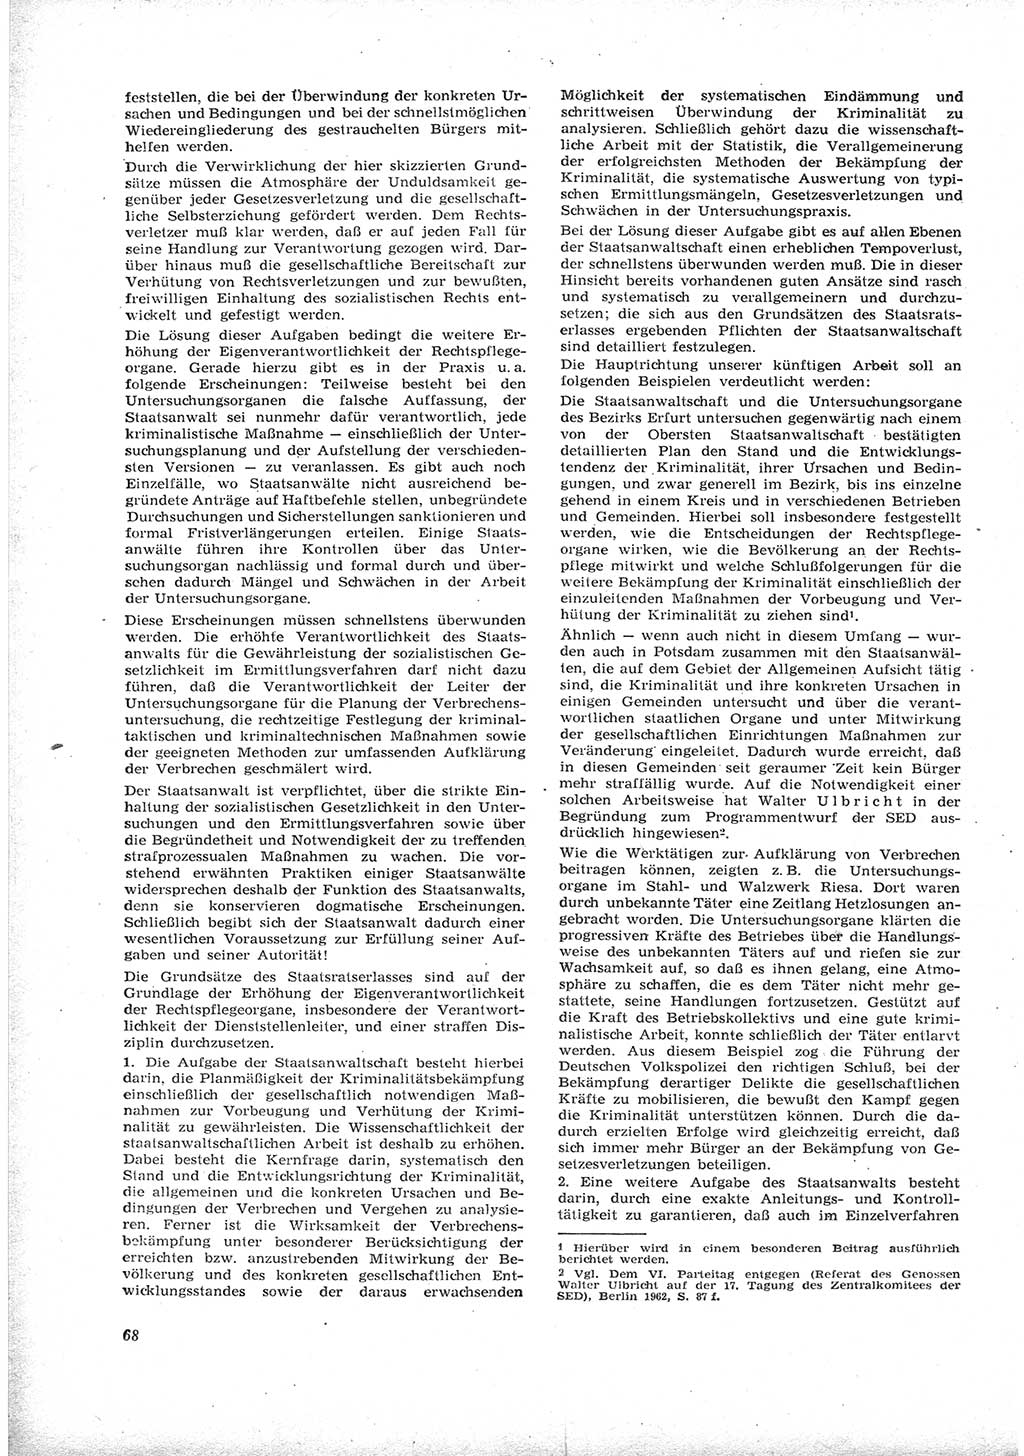 Neue Justiz (NJ), Zeitschrift für Recht und Rechtswissenschaft [Deutsche Demokratische Republik (DDR)], 17. Jahrgang 1963, Seite 68 (NJ DDR 1963, S. 68)